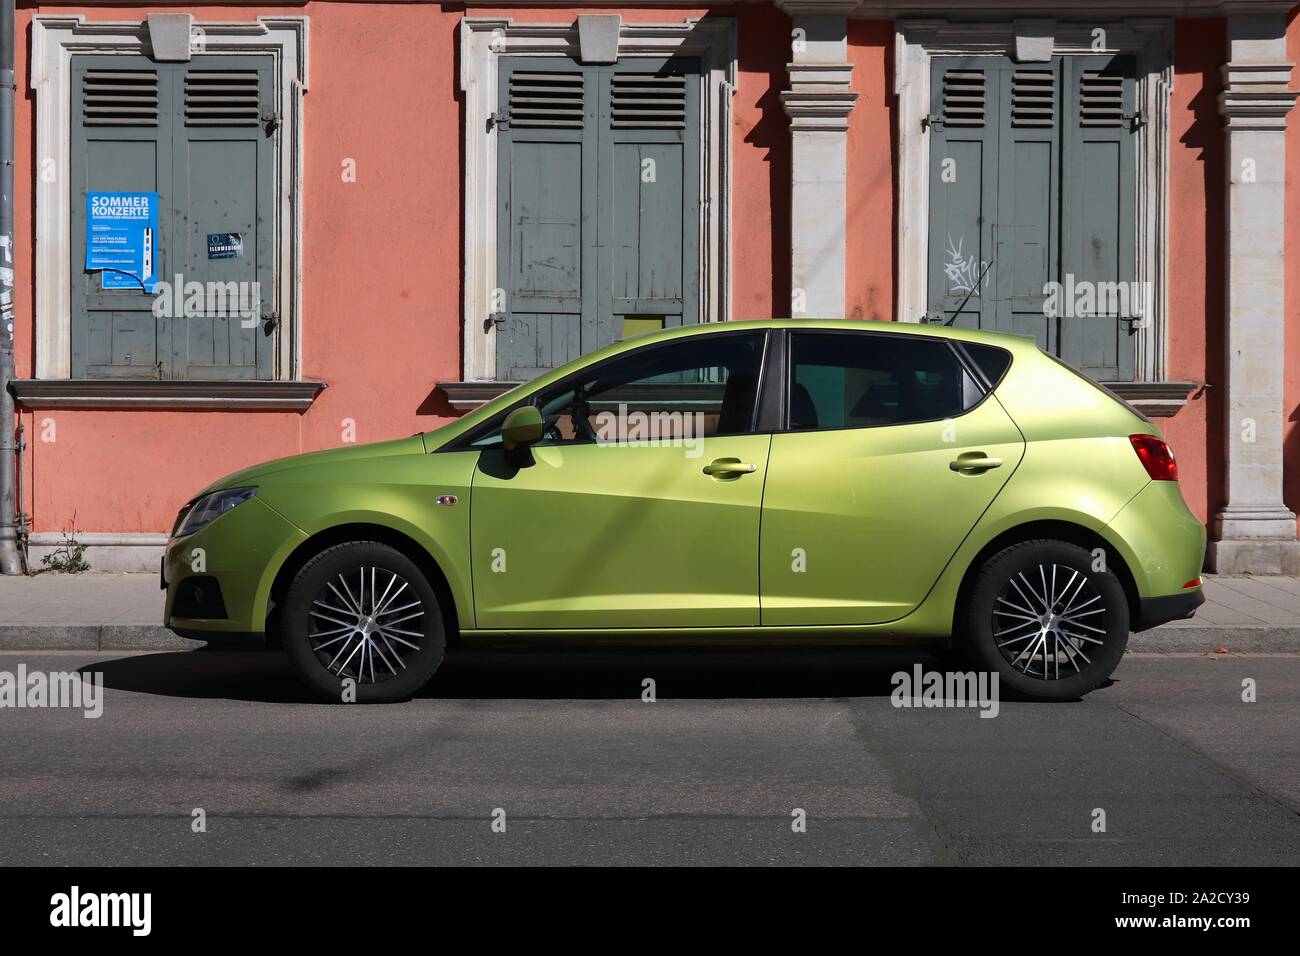 ERLANGEN, Deutschland - Mai 6, 2018: Grün Seat Ibiza kompakte Limousine Auto in Deutschland geparkt. Das Auto wurde von dem Belgischen auto Designers Luc Donckerwol konzipiert Stockfoto